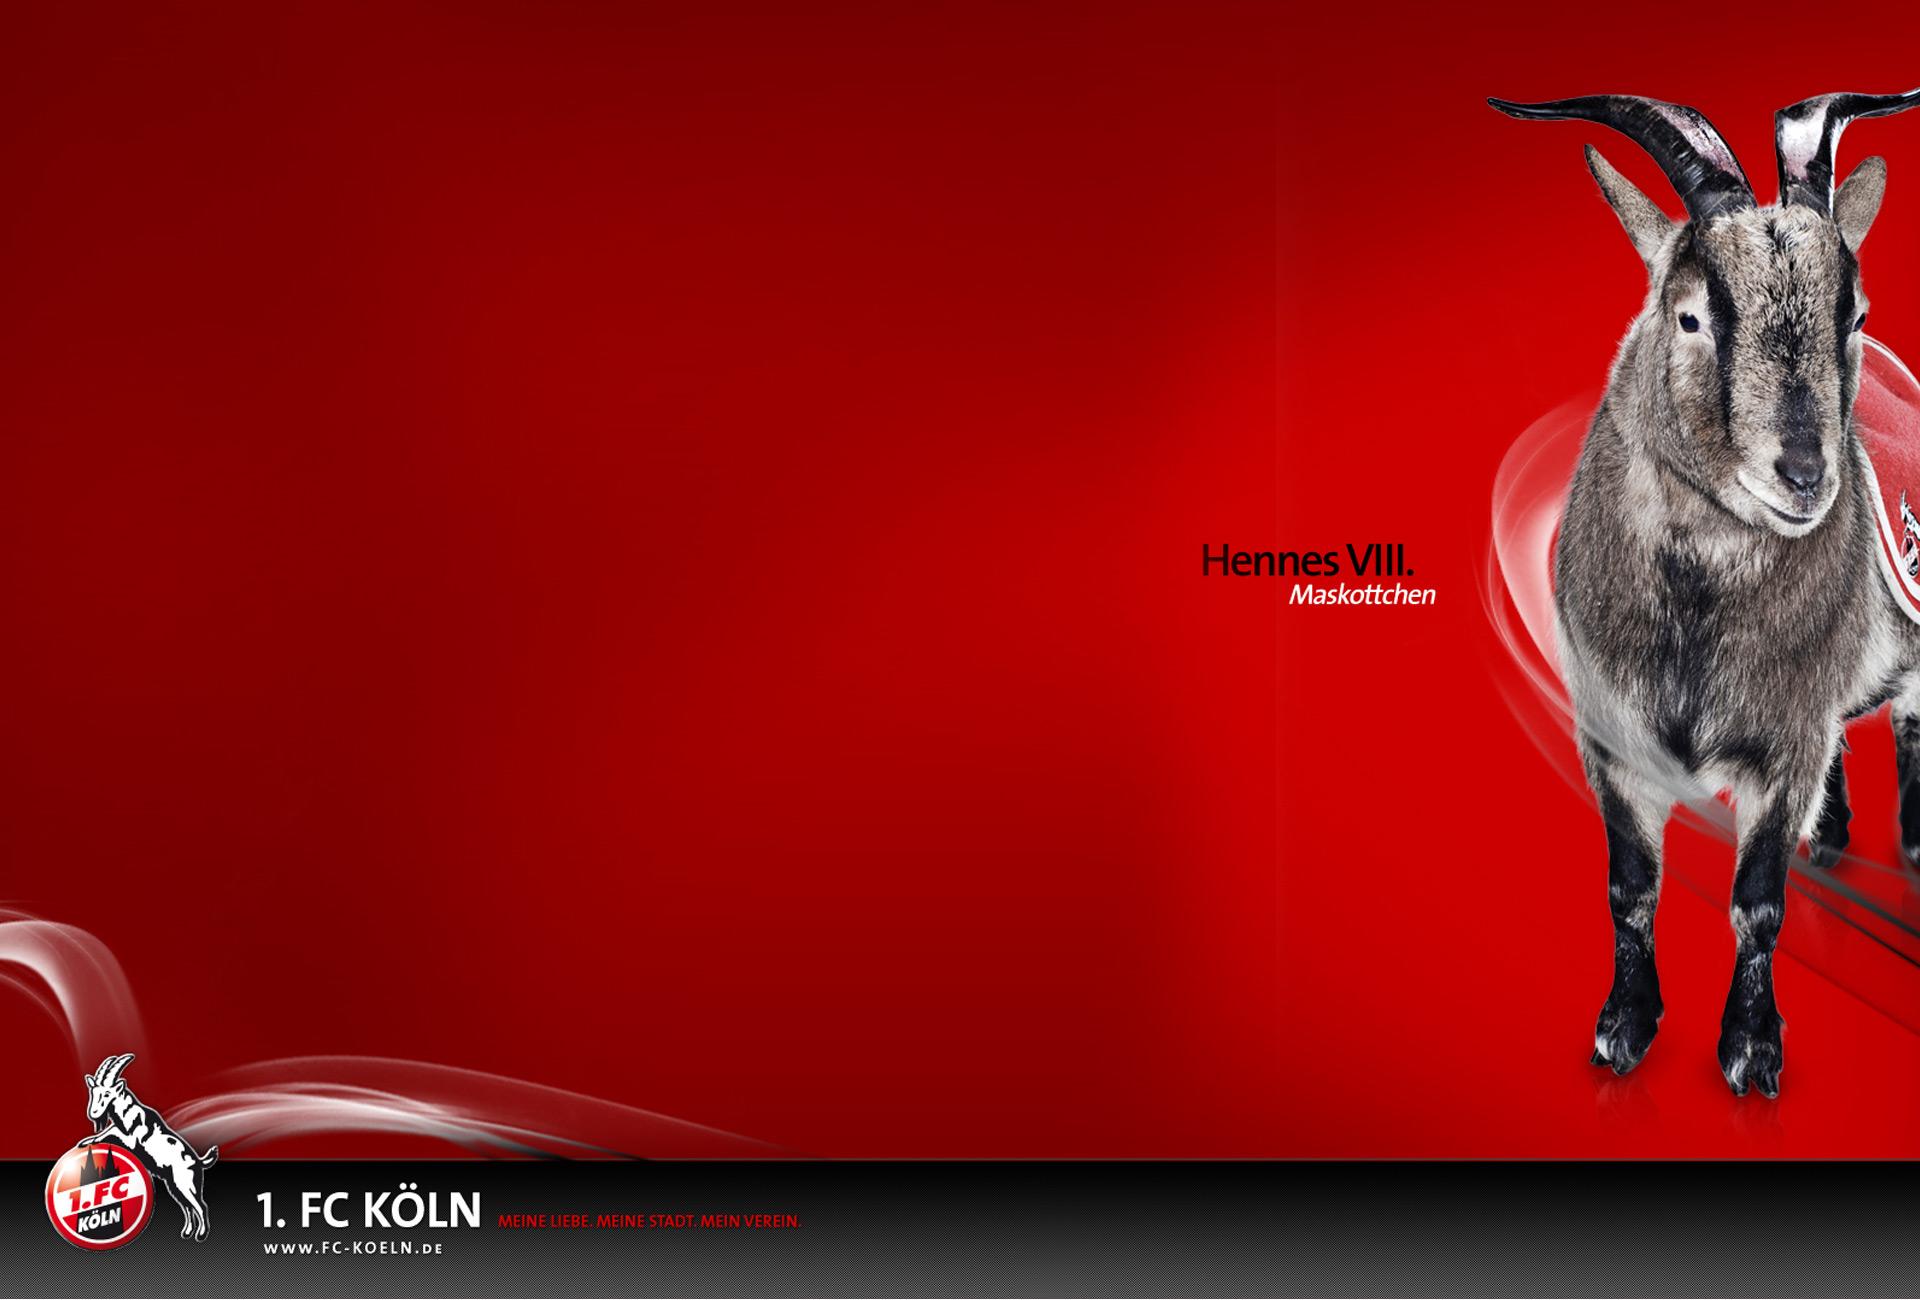 Beautiful FC KÃ¶ln Wallpaper. Full HD Picture